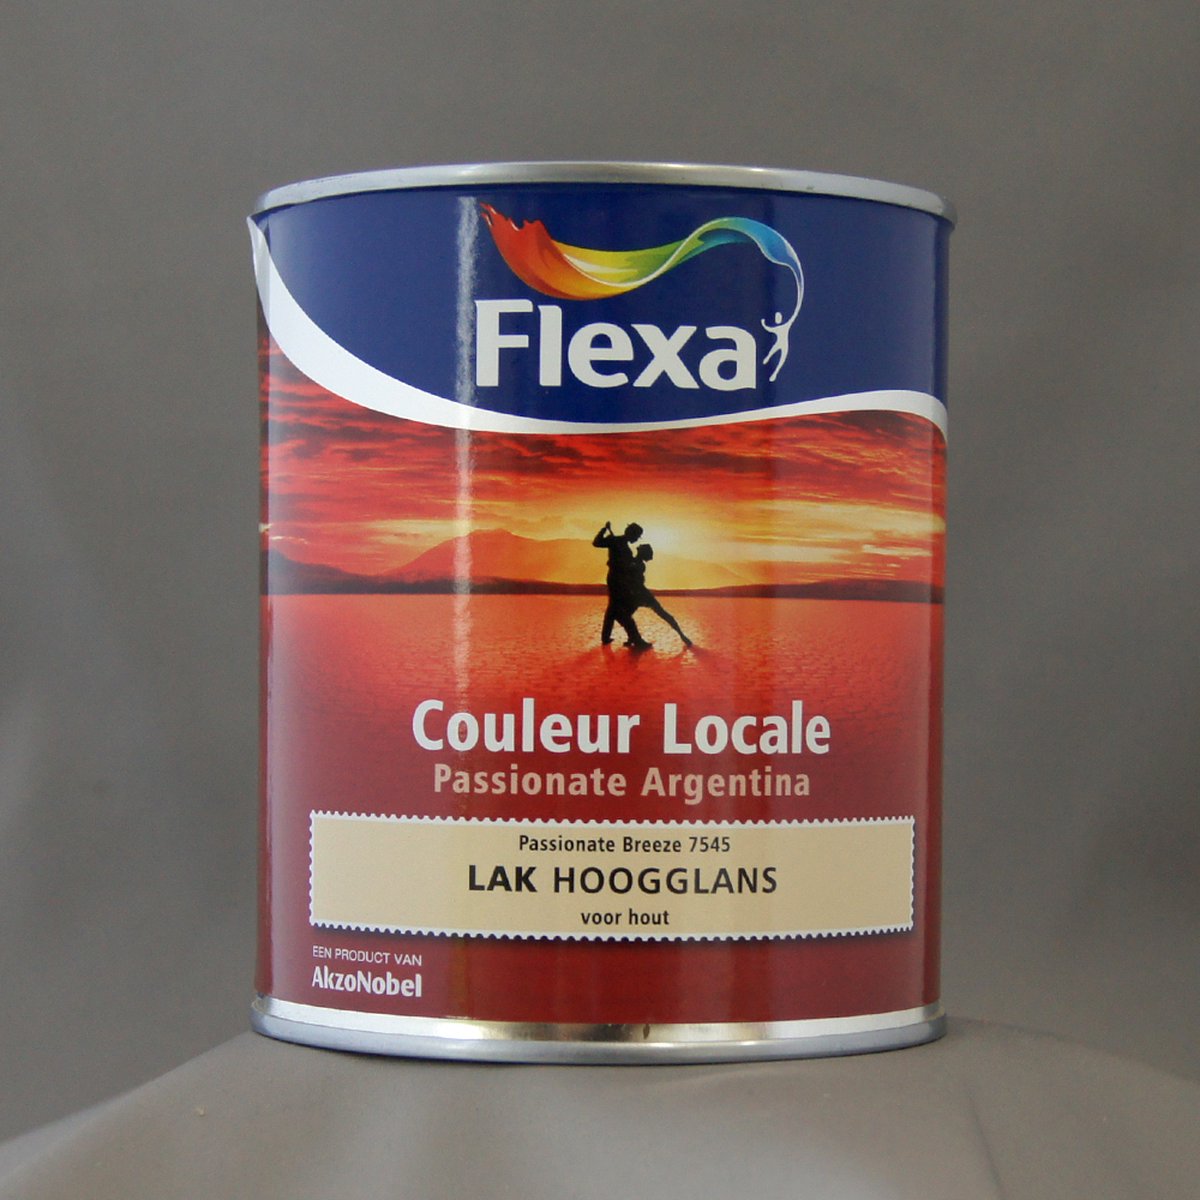 Flexa Couleur Locale - Lak Hoogglans - Passionate Argentina Breeze - 7545 - 0,75 liter